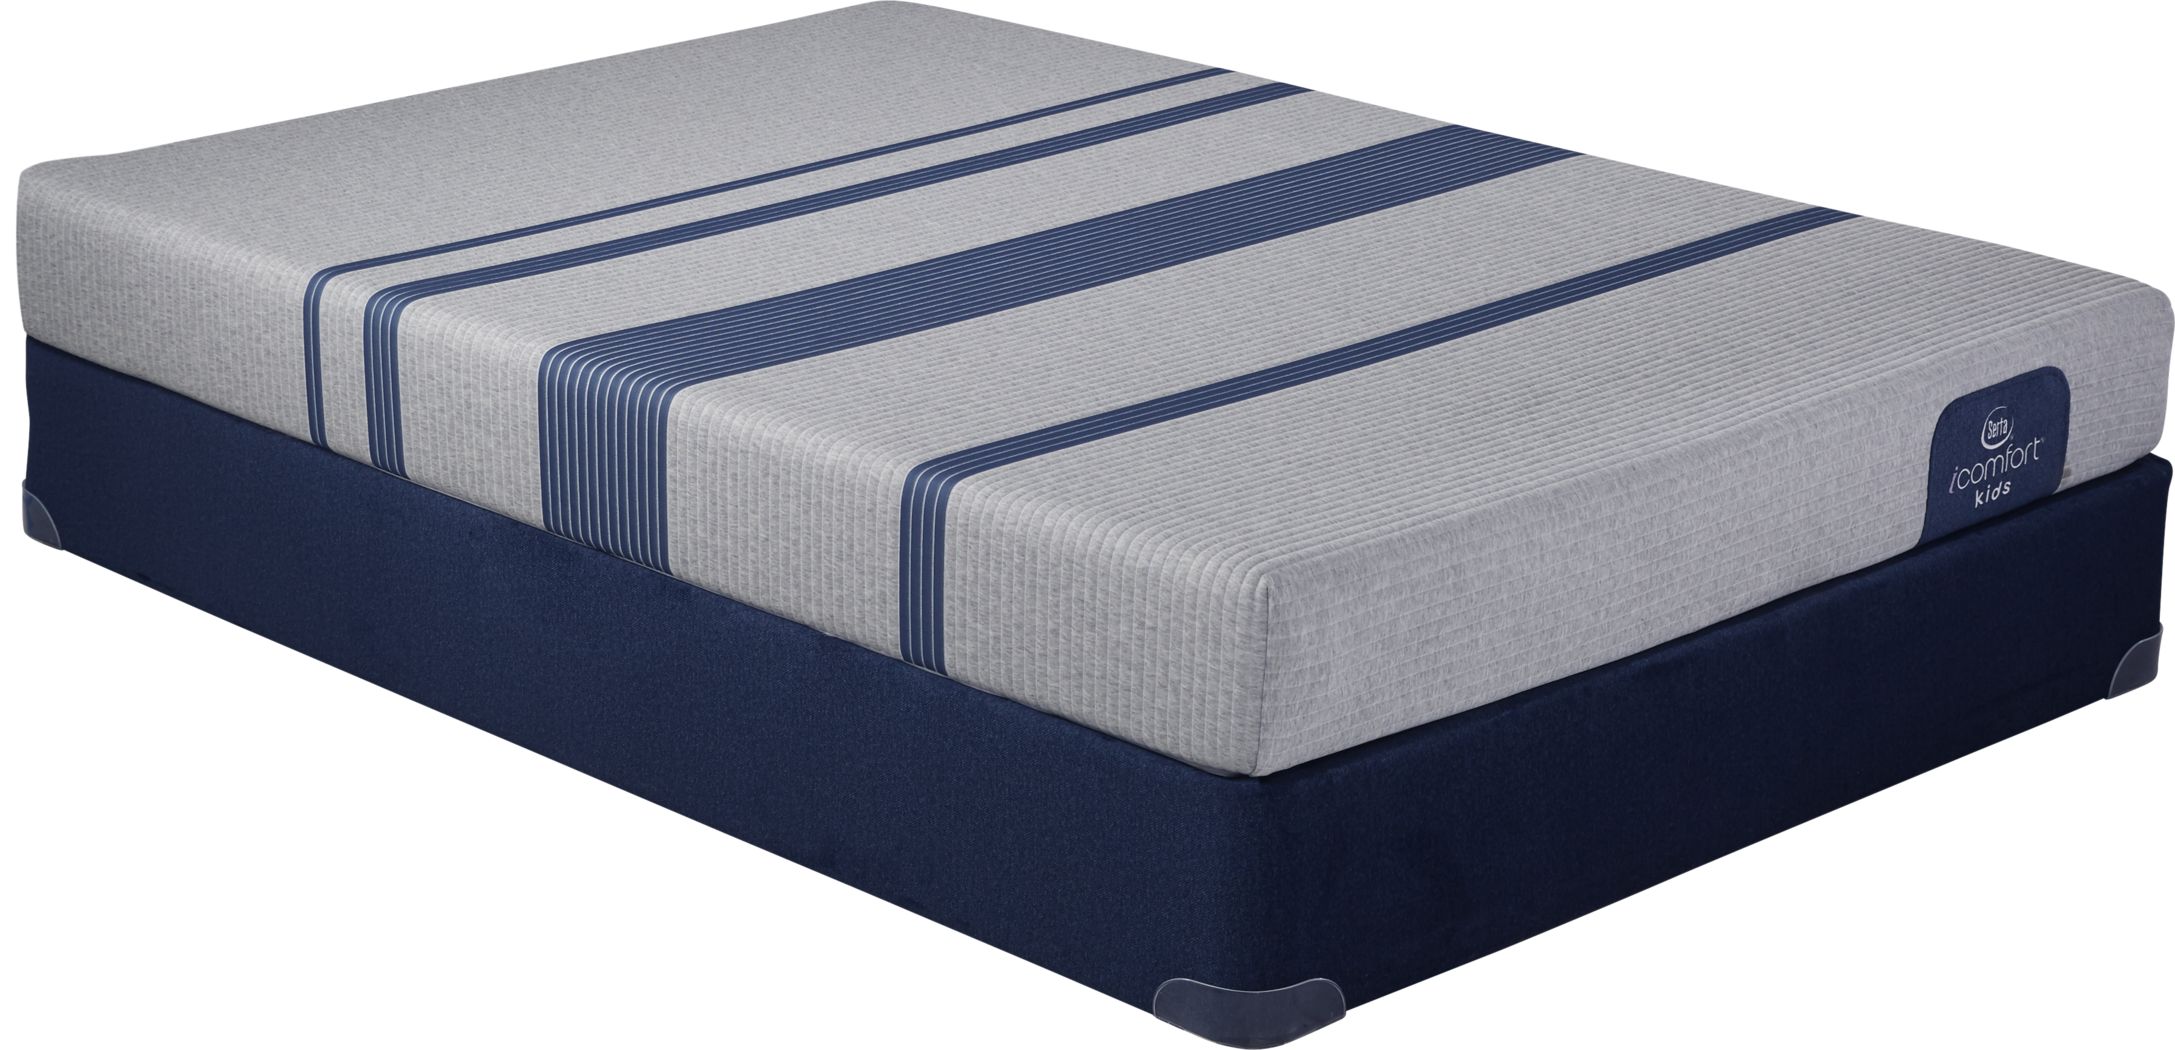 waterproof mattress serta icomfort bluee 100 queen